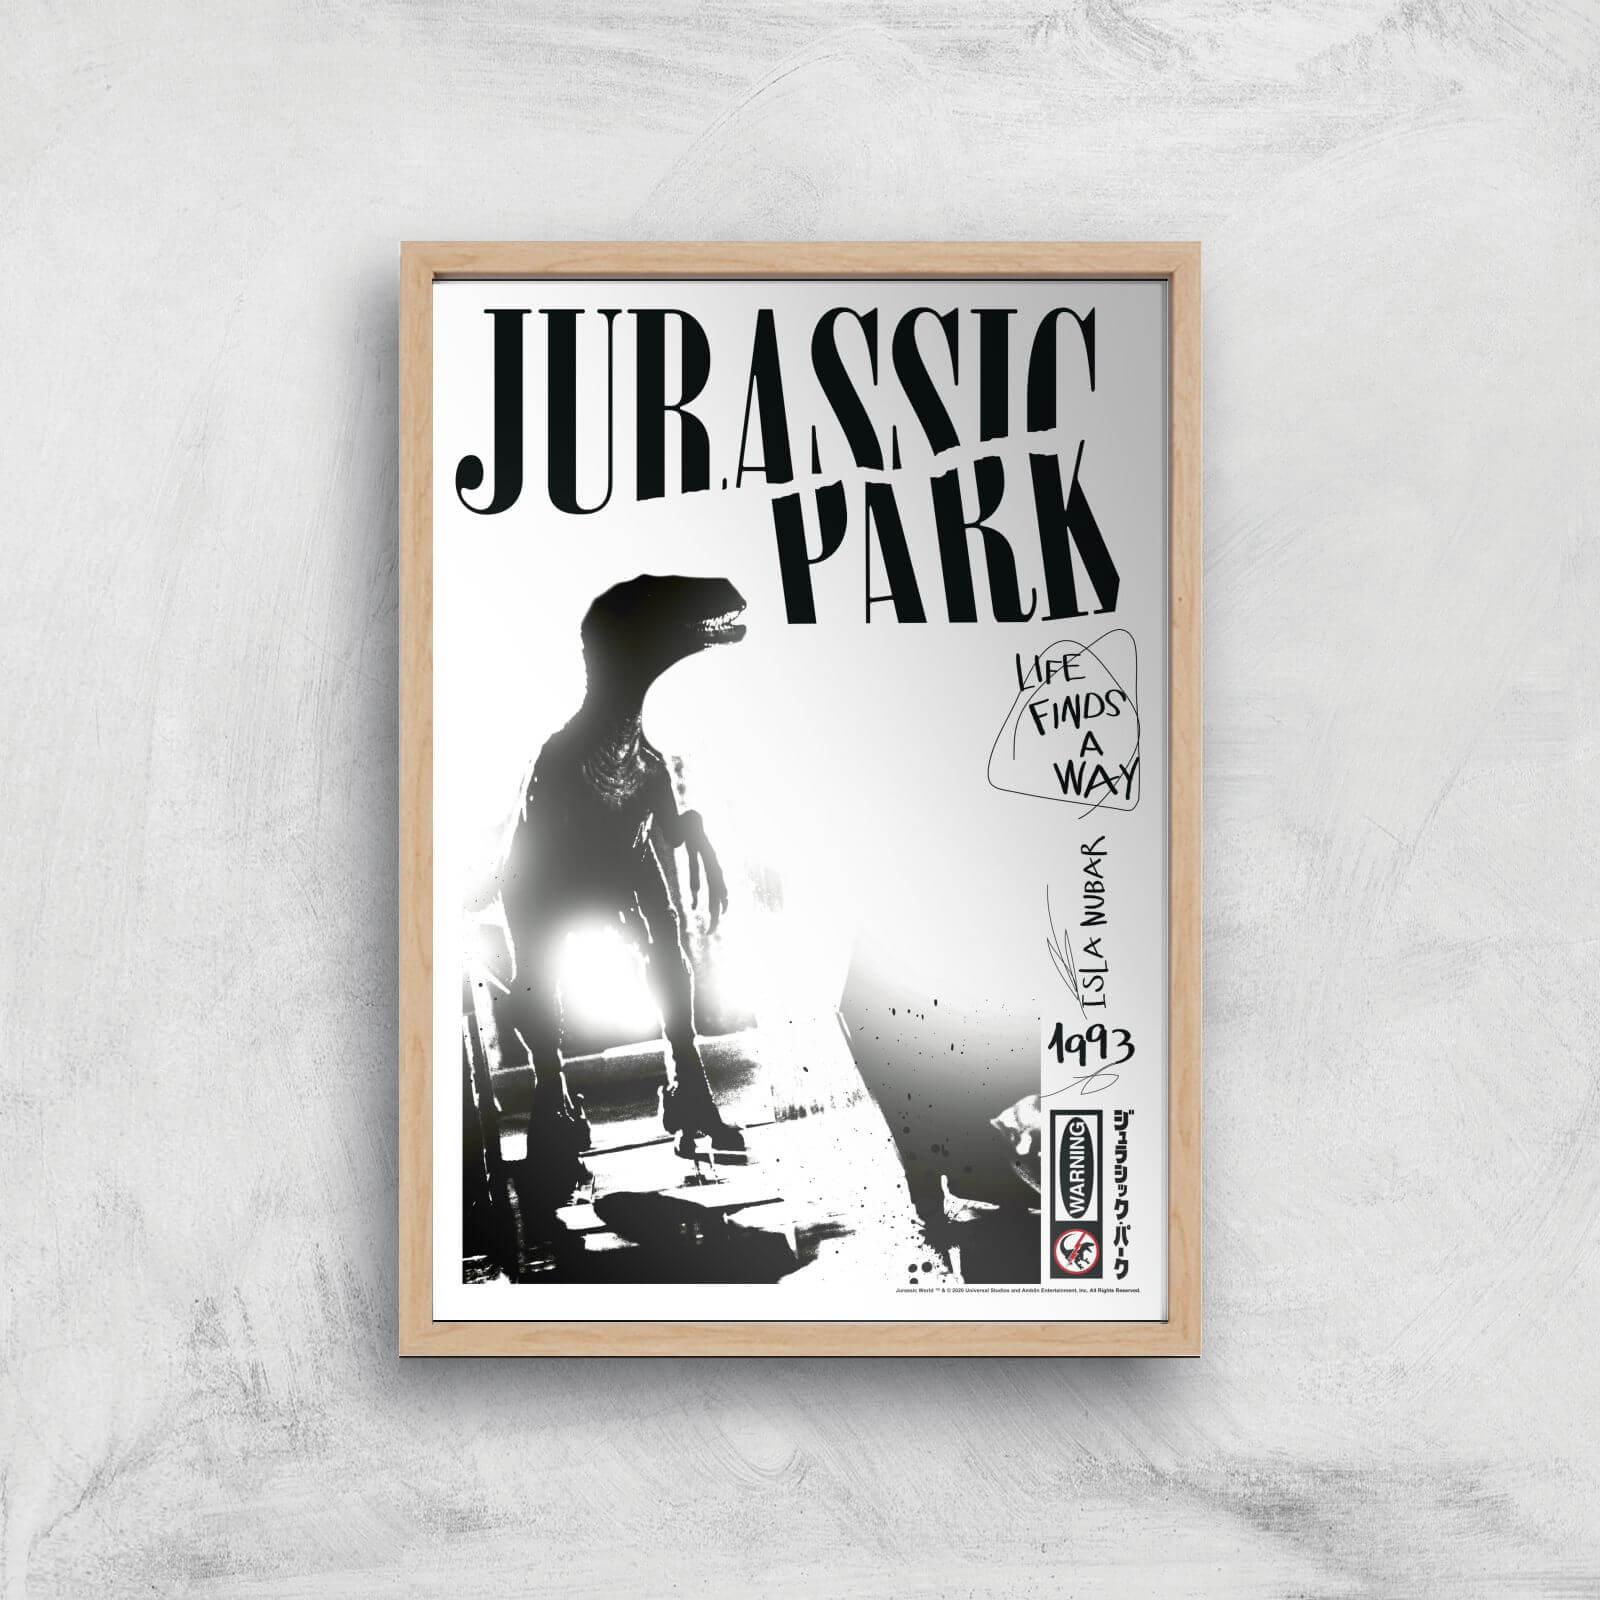 Jurassic Park Life Finds A Way Giclee Art Print - A2 - Wooden Frame